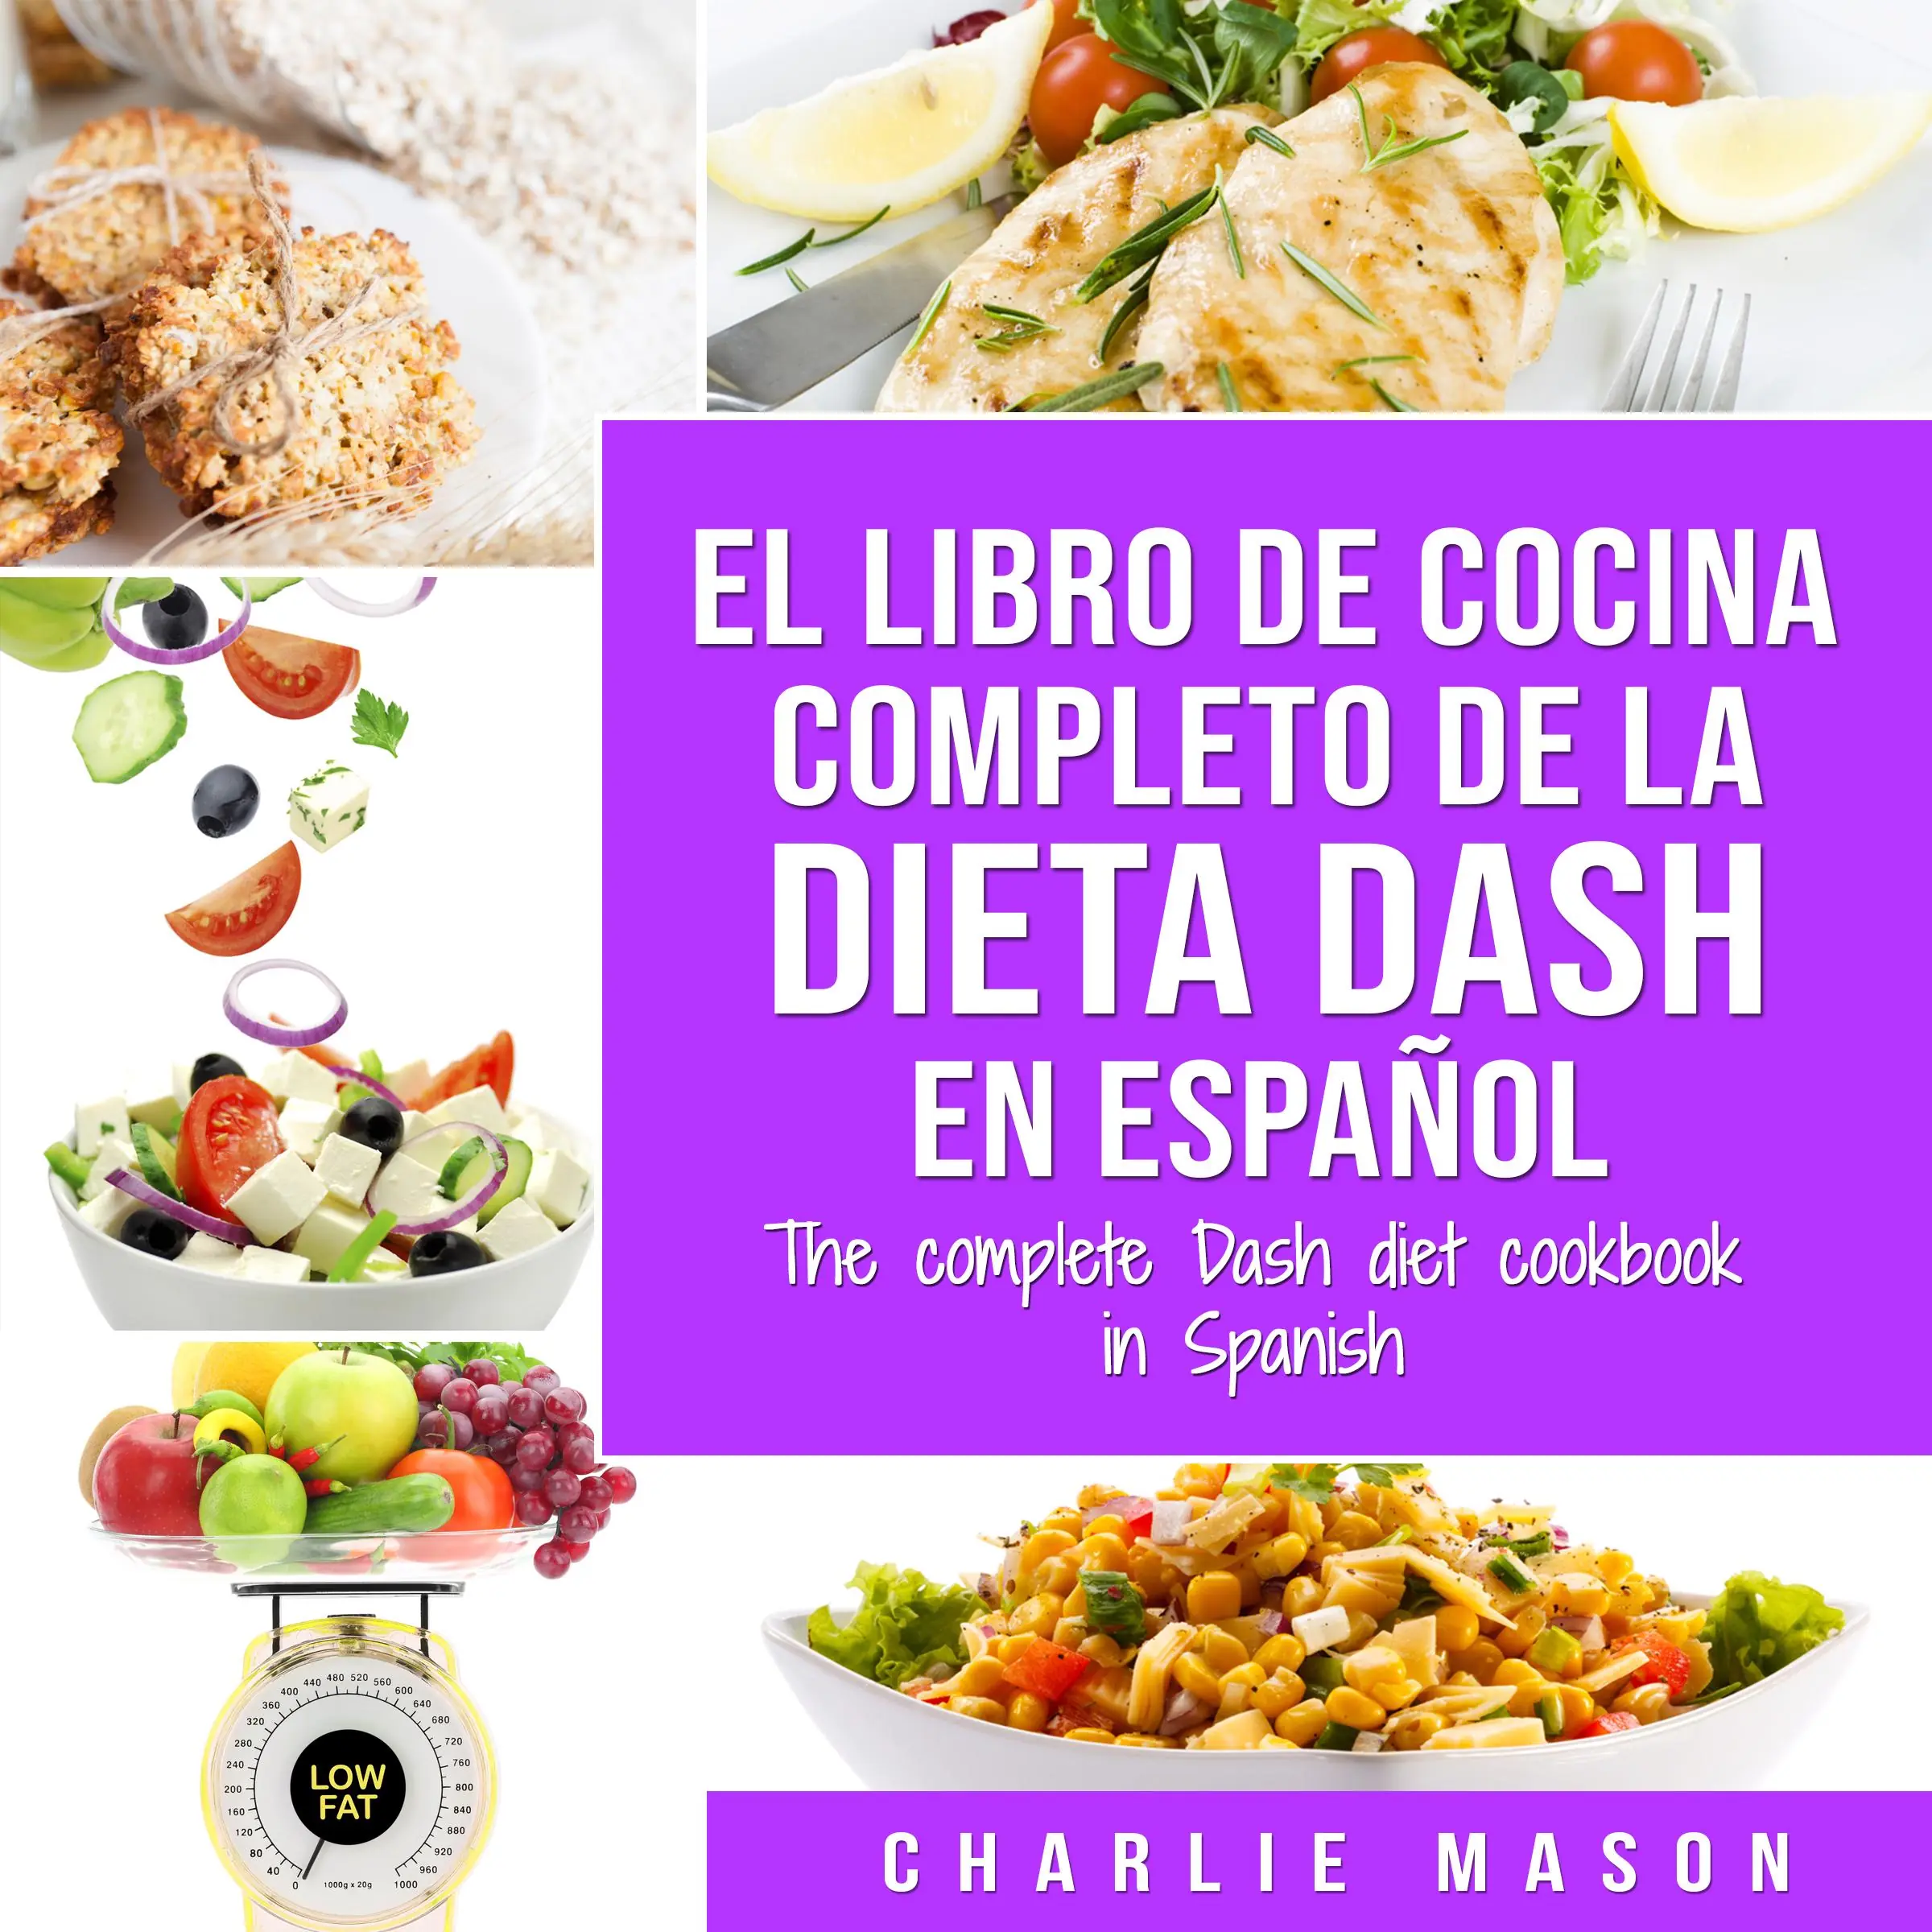 El libro de cocina completo de la dieta Dash en español / The complete Dash diet cookbook in Spanish (Spanish Edition) Audiobook by Charlie Mason